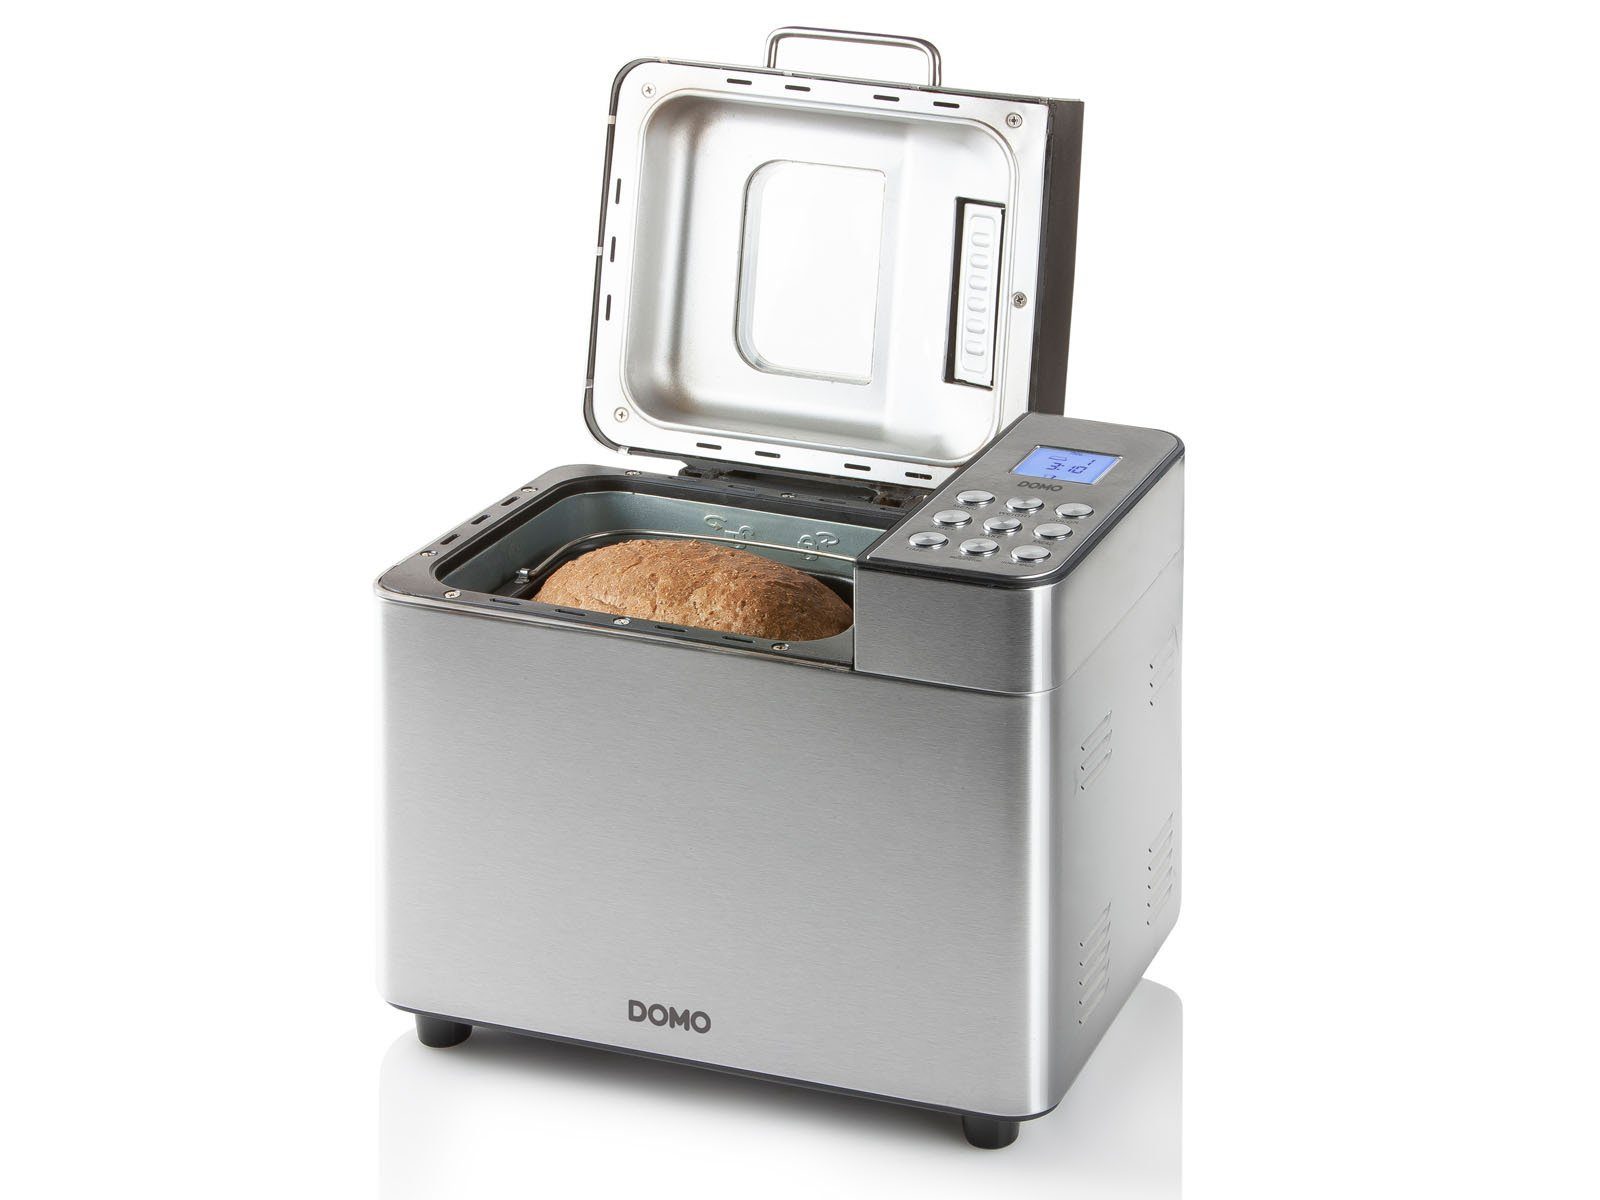 W, Backmaschine glutenfreies Domo zahlreiche Pizzateig, Brotbackautomat, für 18 Brot-Sorten, Programme, 500 Brot